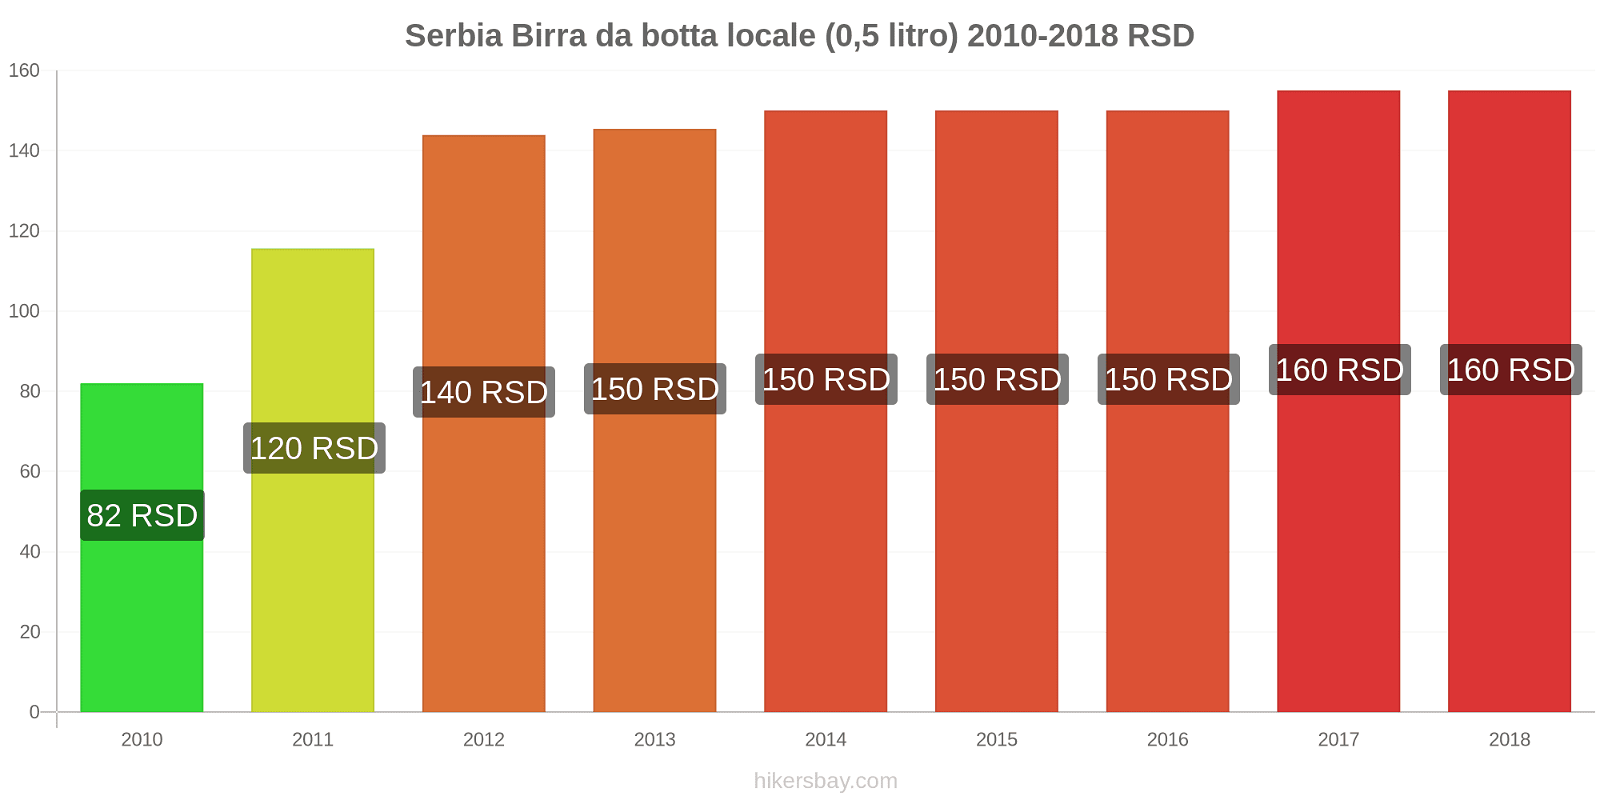 Serbia cambi di prezzo Birra alla spina (0,5 litri) hikersbay.com